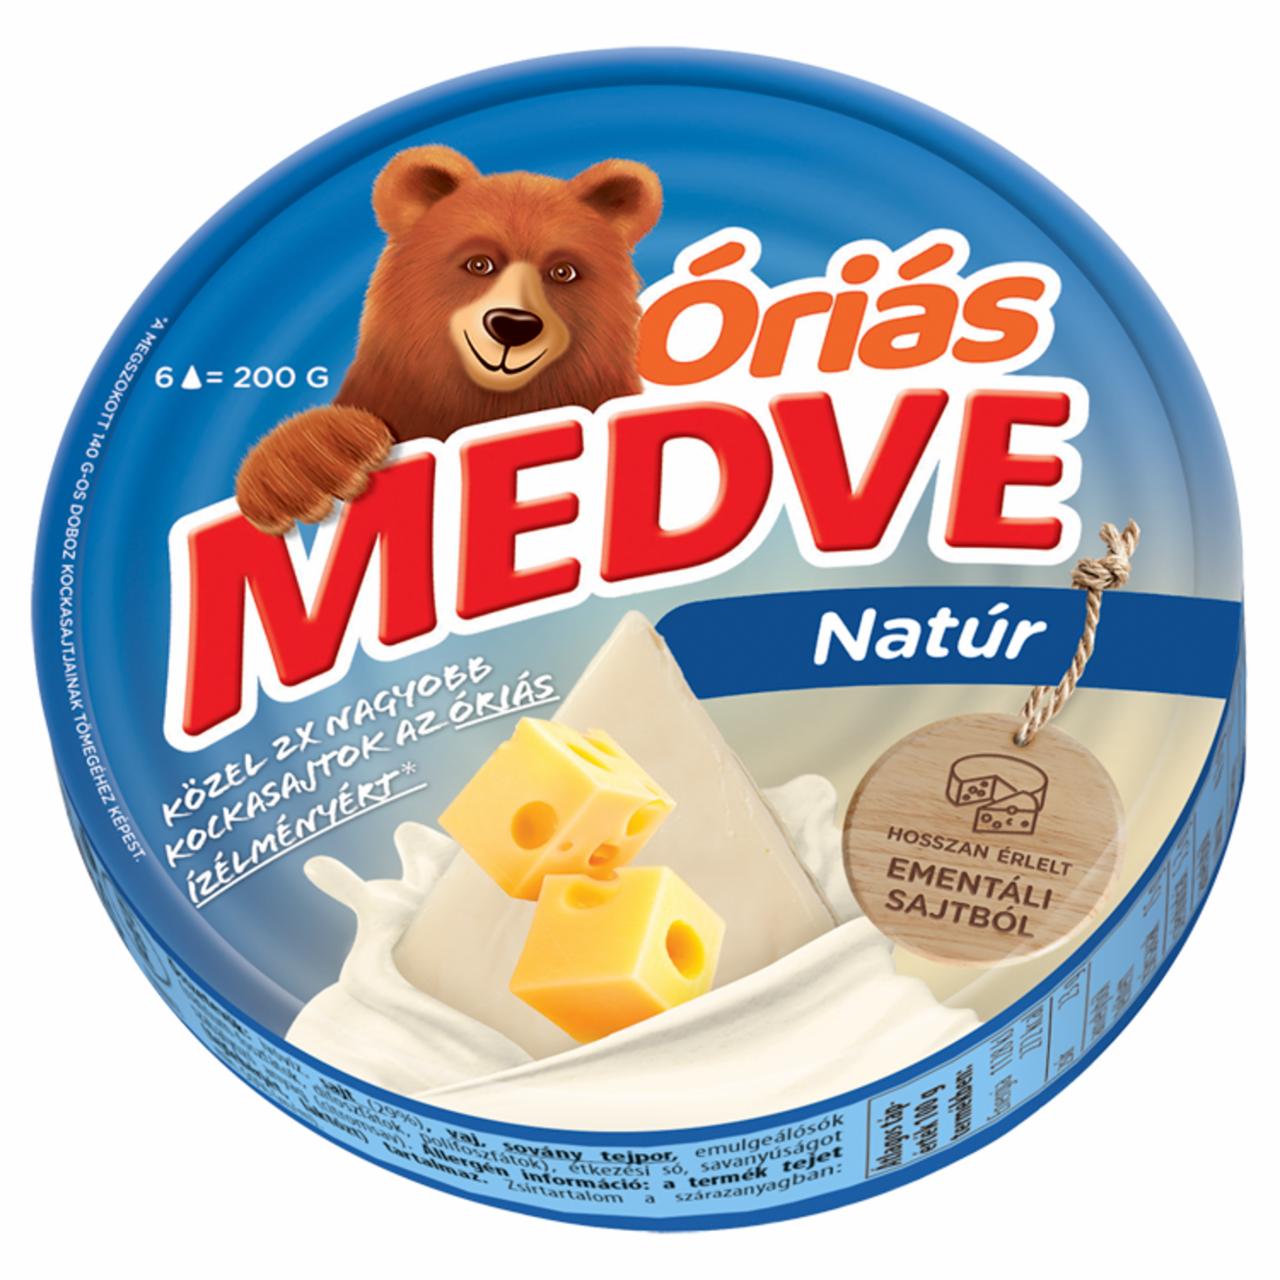 Képek - Medve Óriás natúr kenhető, zsíros ömlesztett sajt 6 x 33,3 g (200 g)